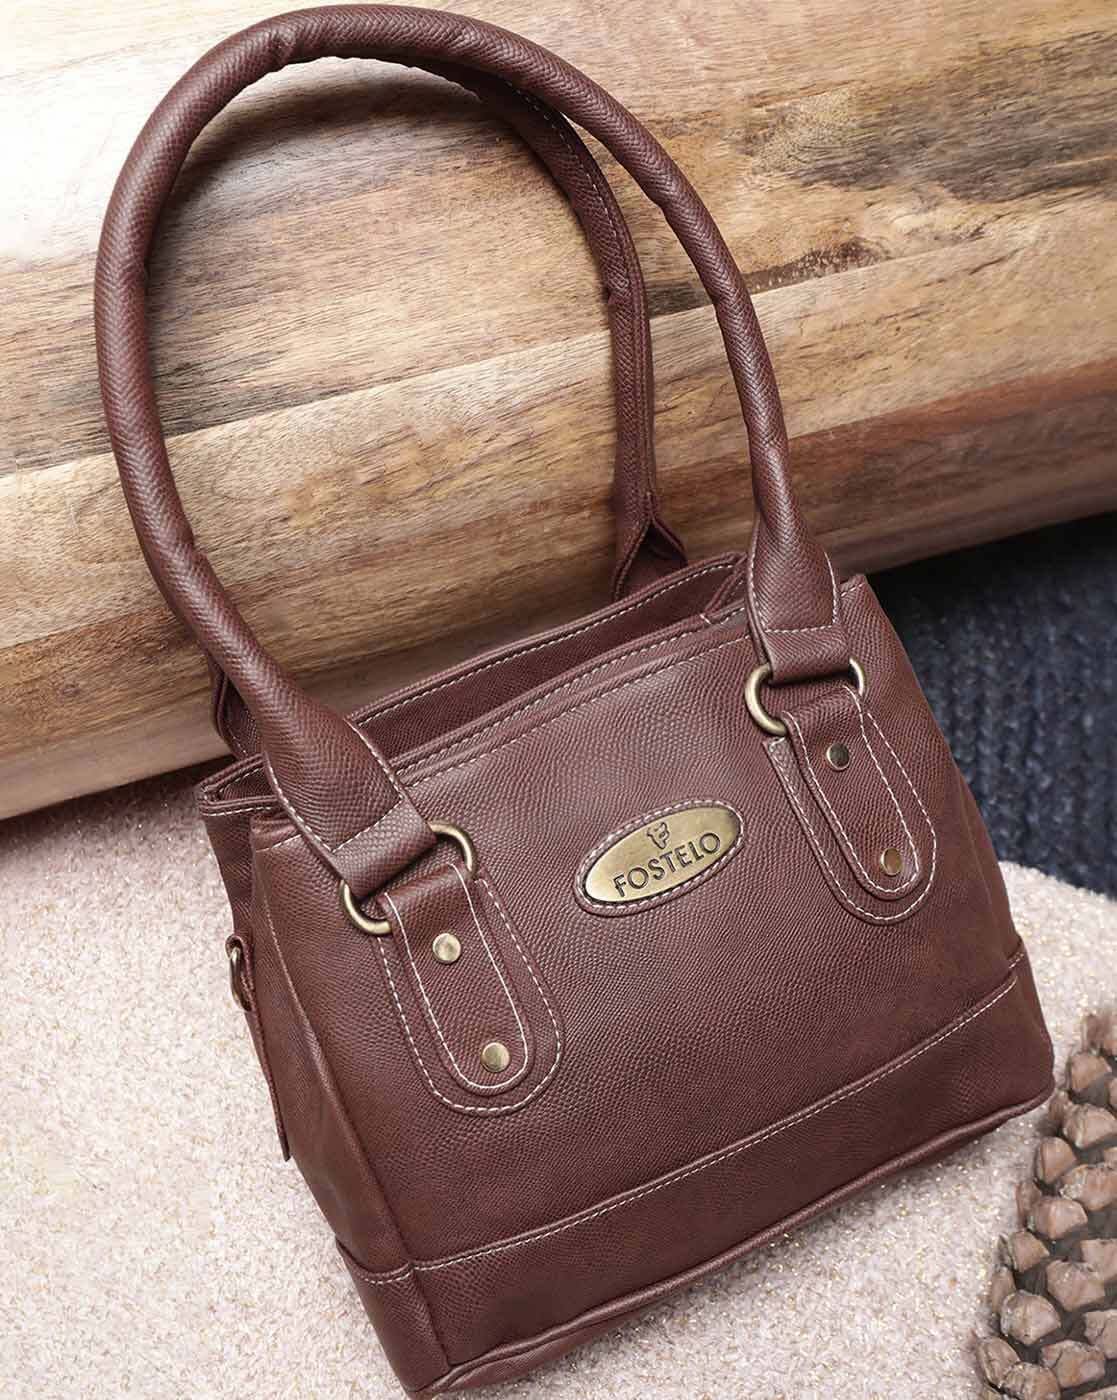 Buy perfect leather Women Tan Handbag Tan Online @ Best Price in India |  Flipkart.com